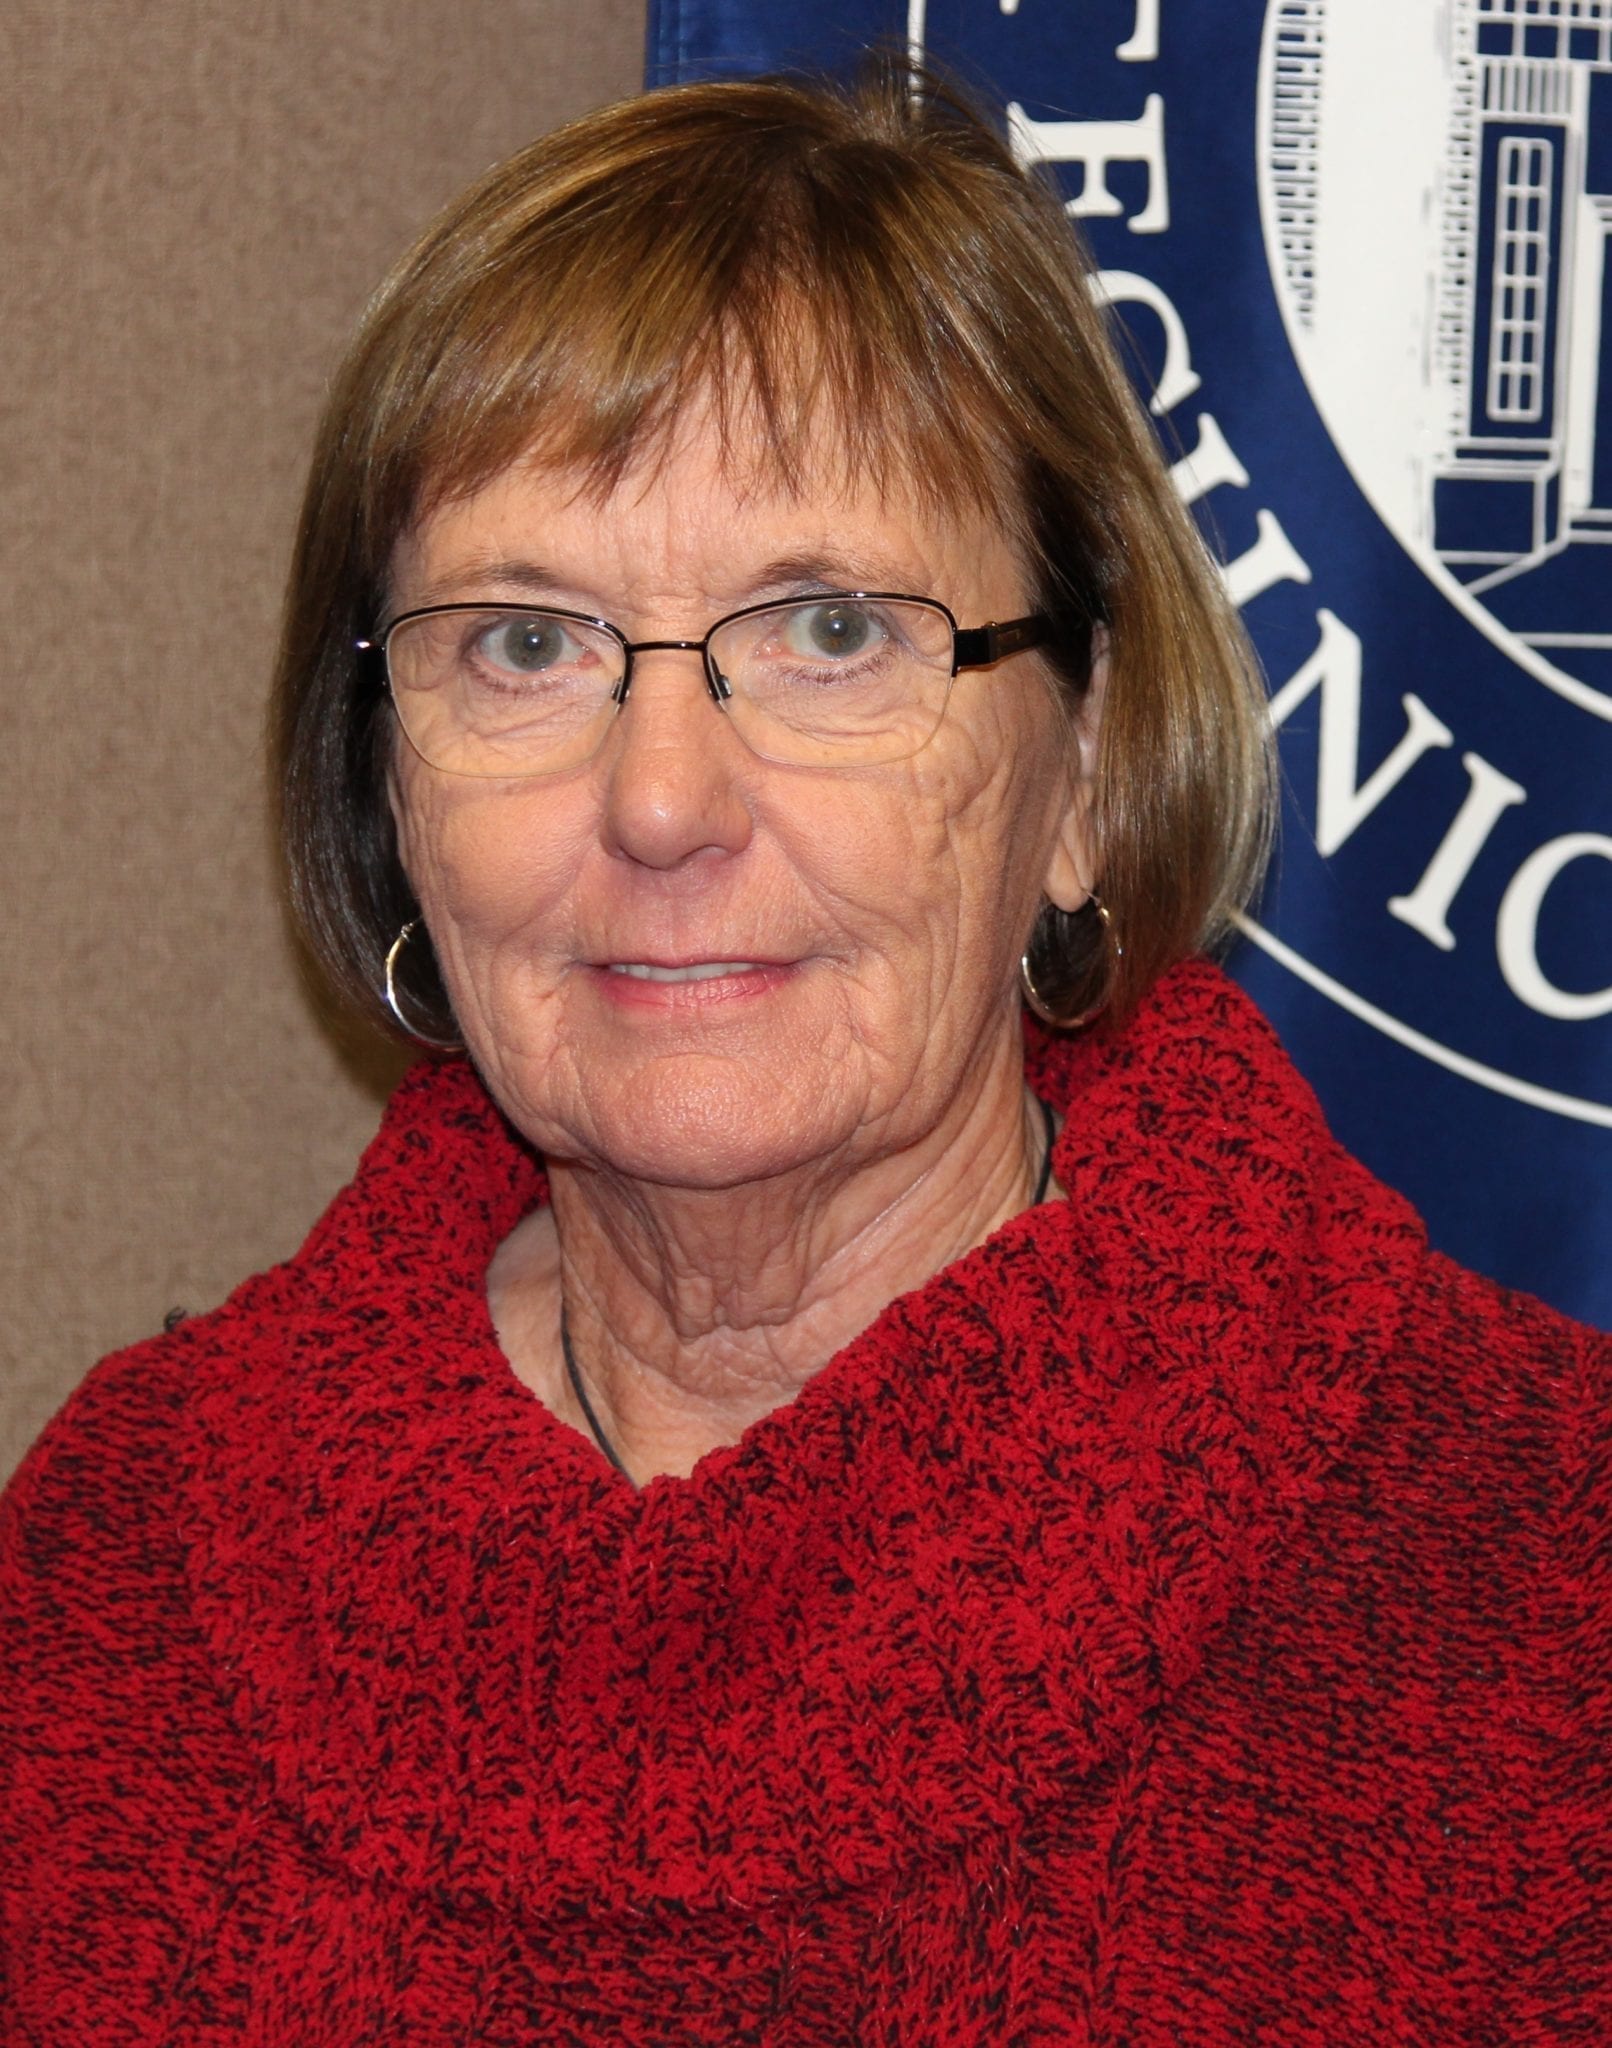 2019 11 11 -- New BRTC Board member -- Sue McGowan